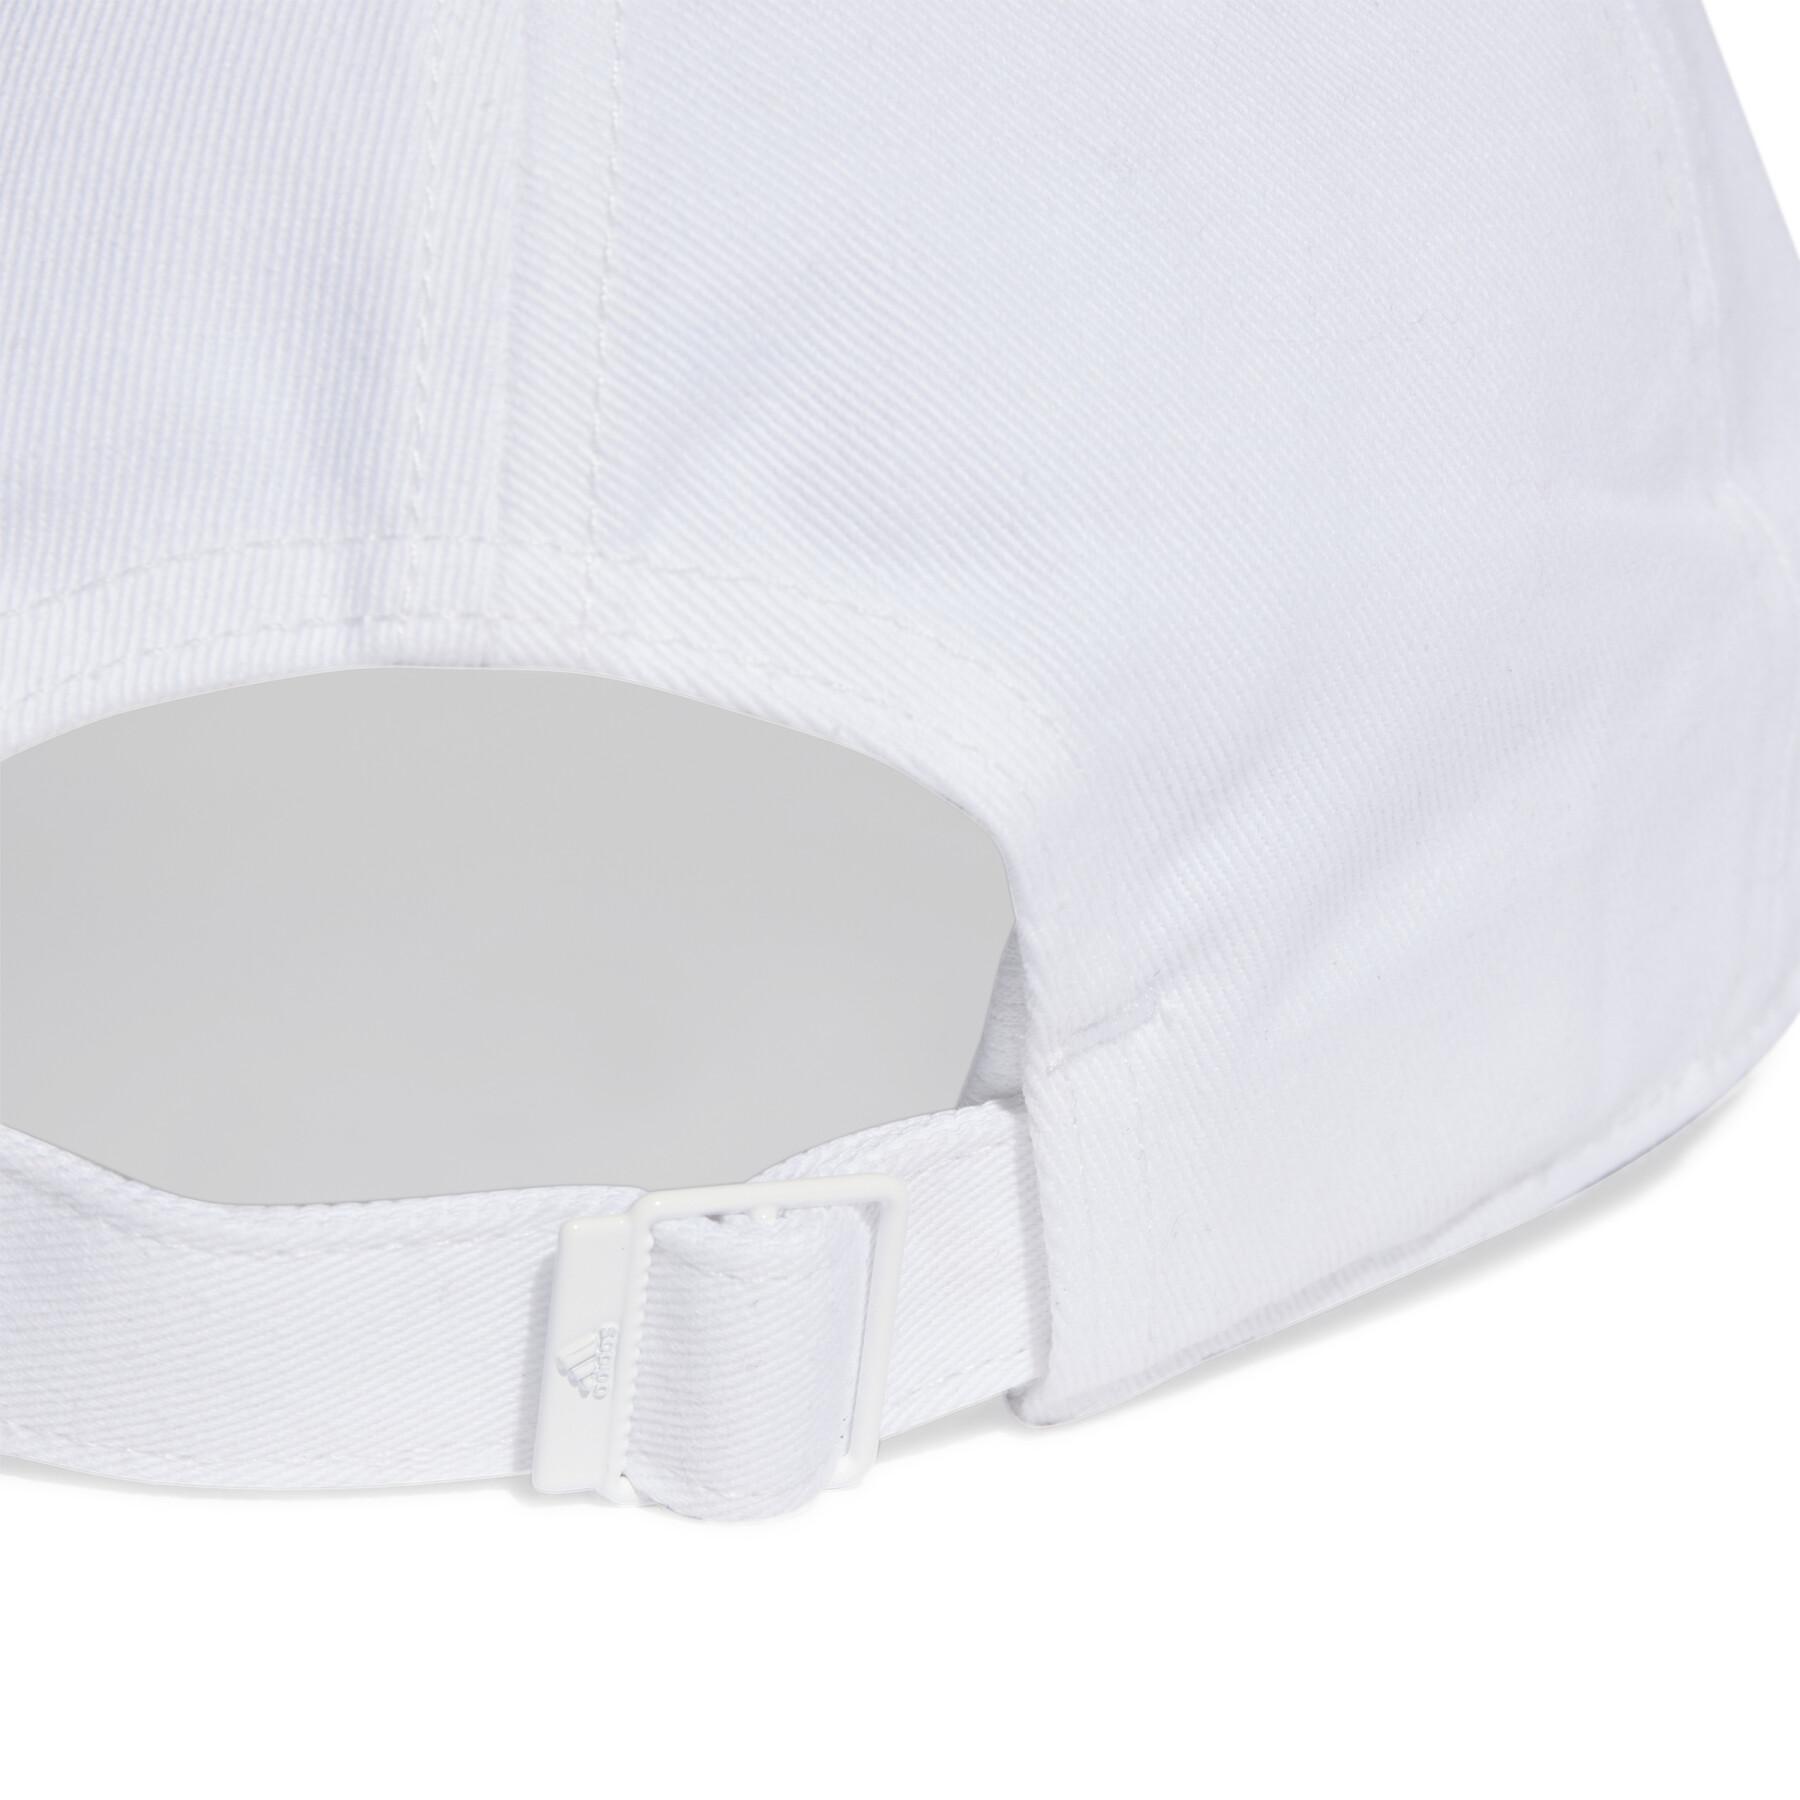 Gorra de sarga de algodón adidas 3-Stripes